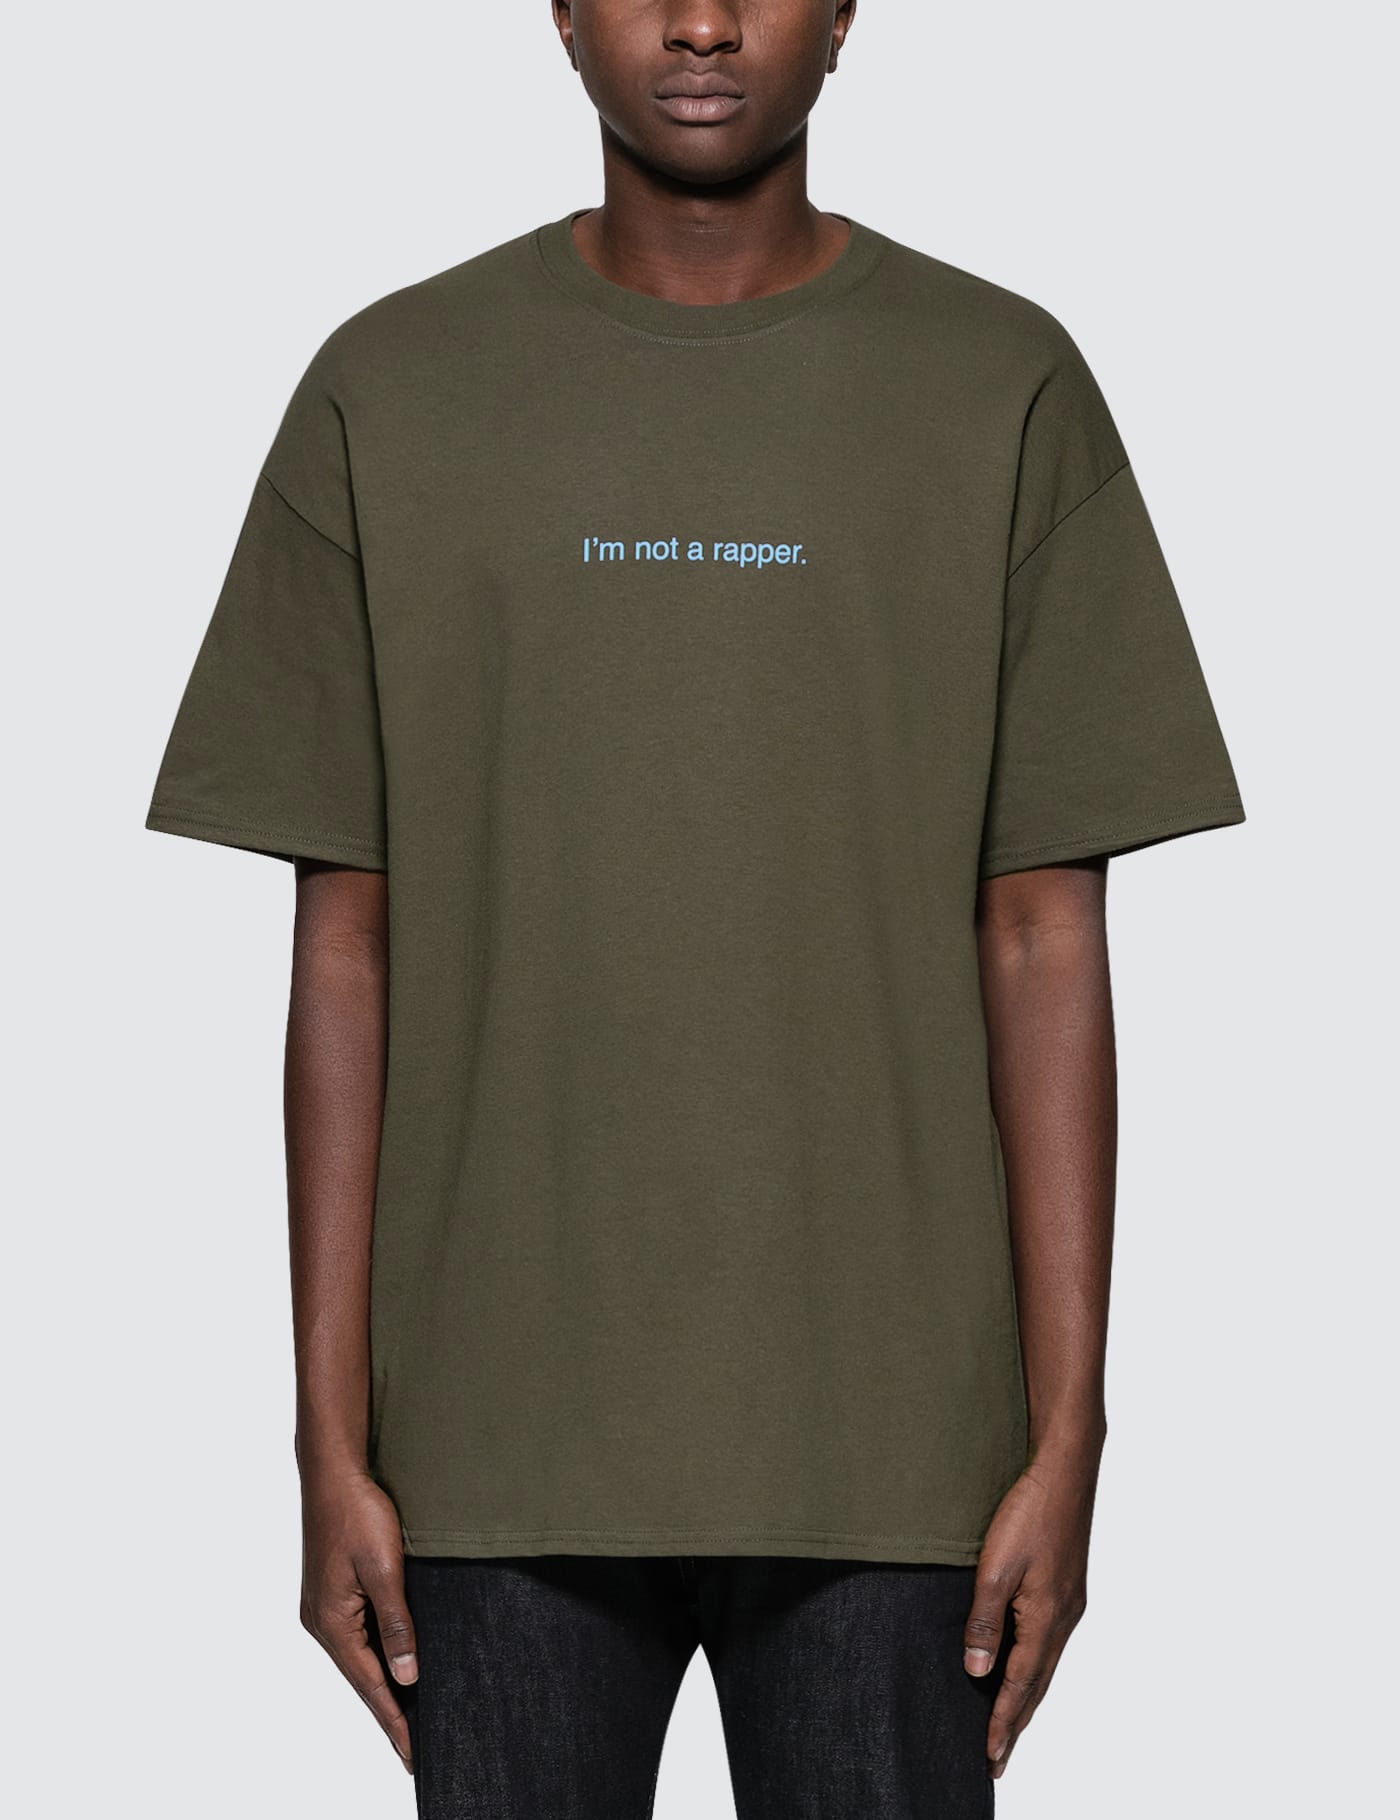 Fuck art make tees tシャツ